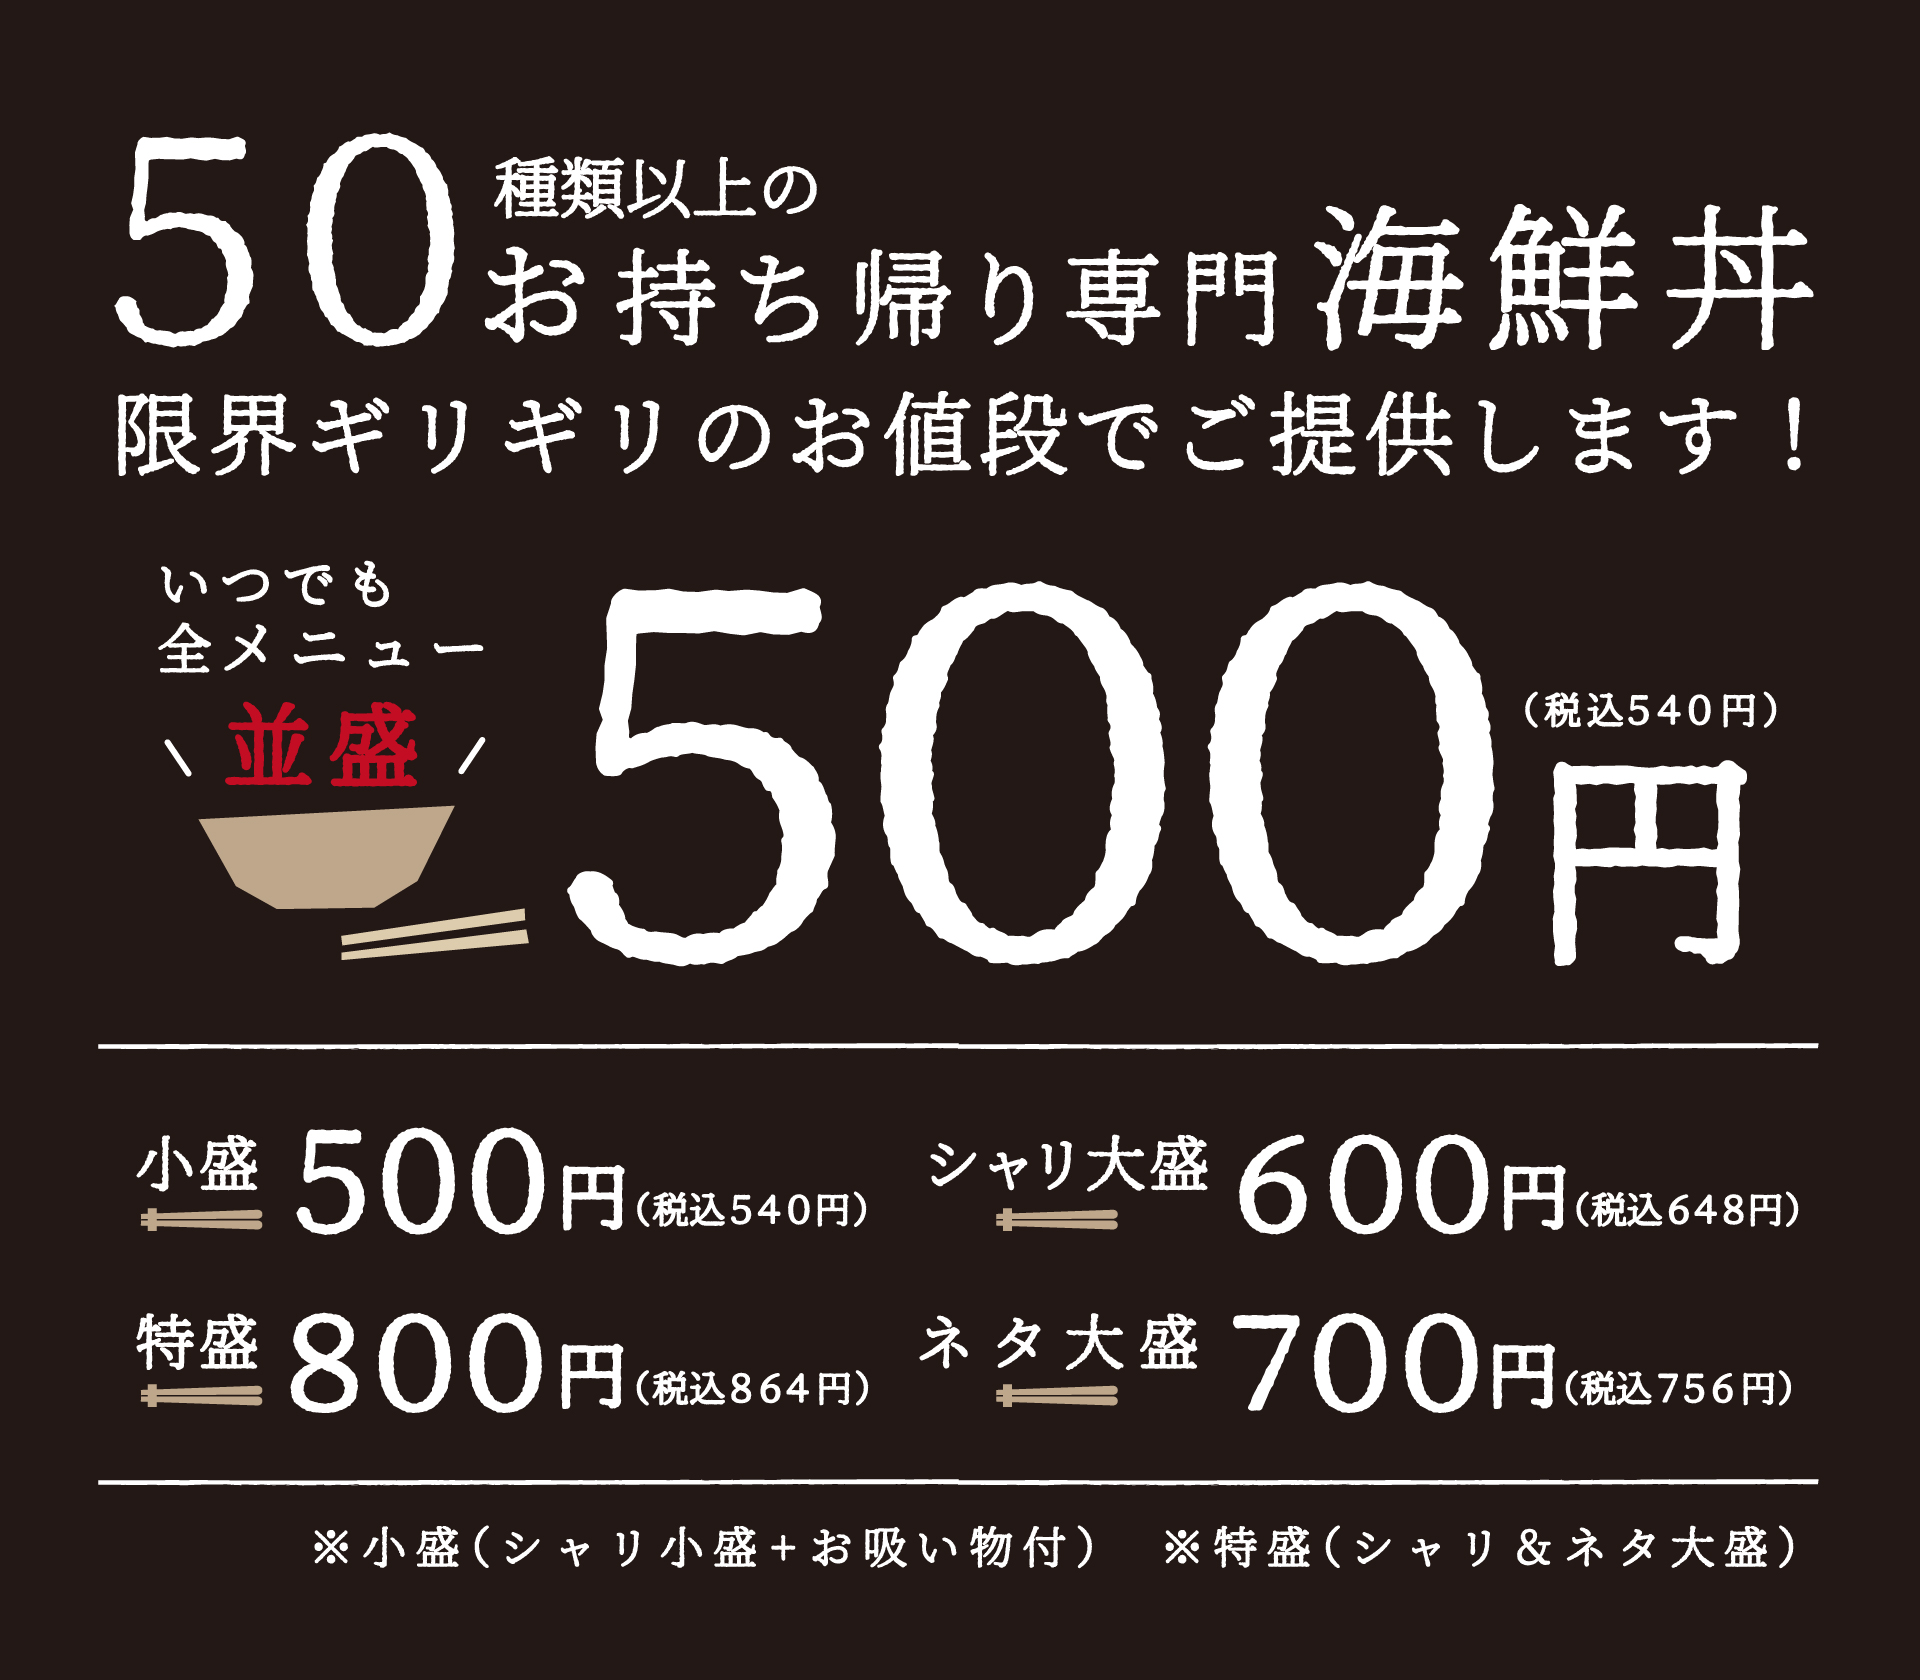 50種類以上の海鮮丼すべて 並盛540円(税込)！！